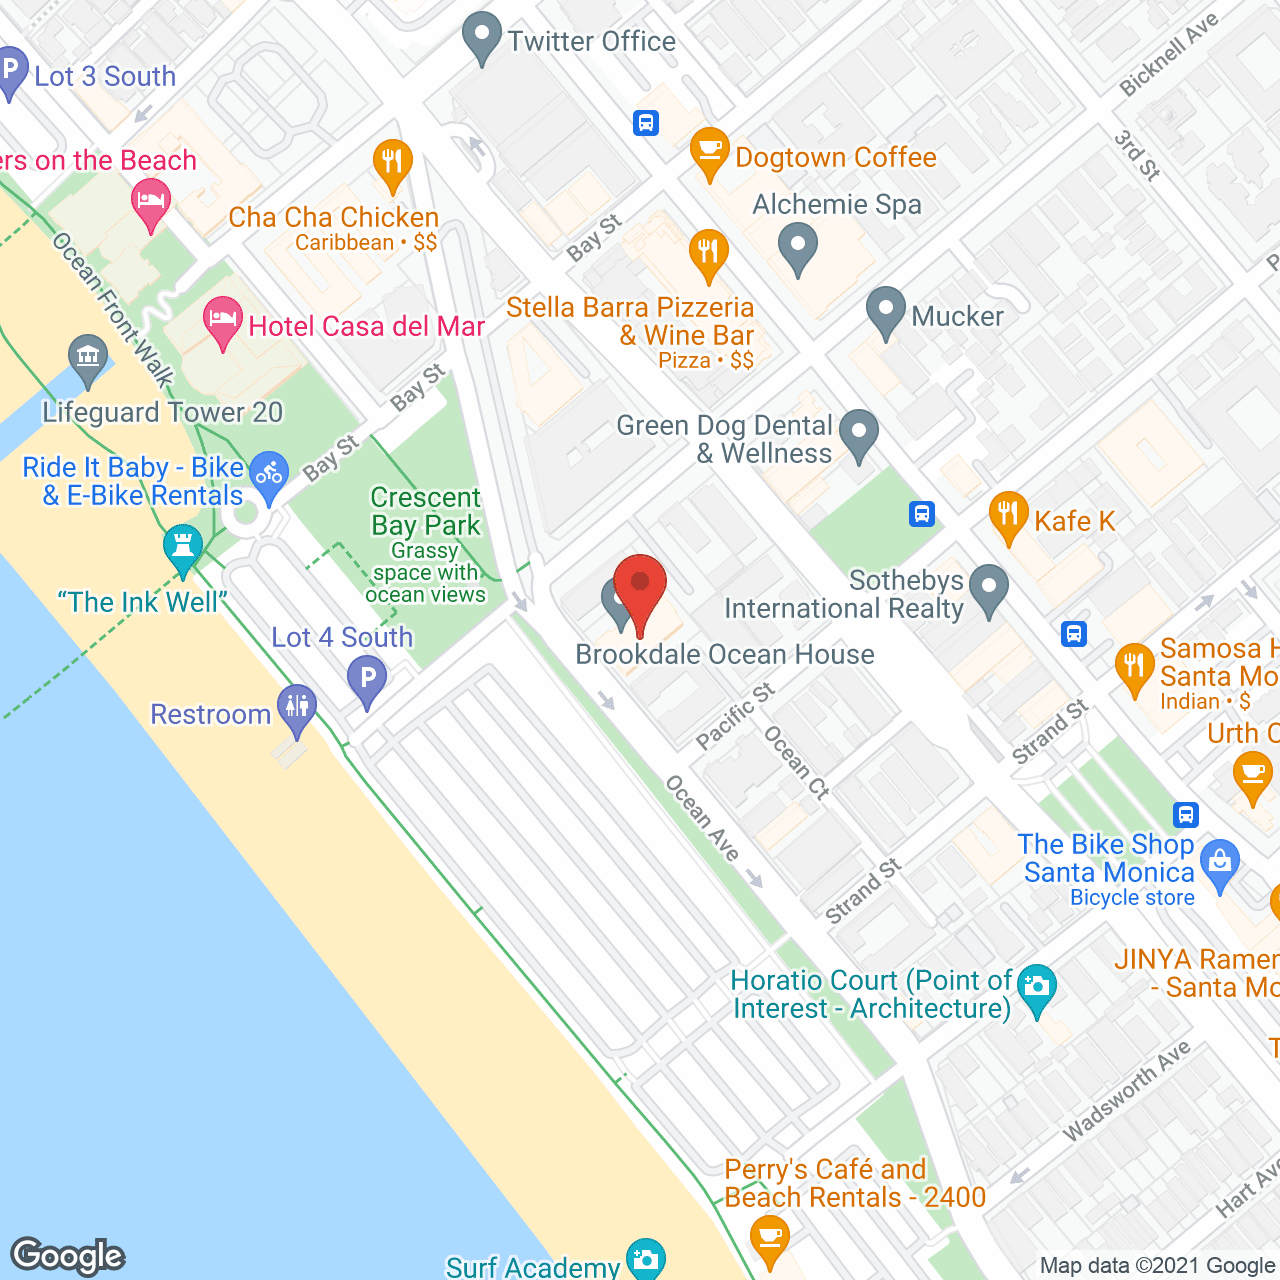 Ocean House in google map